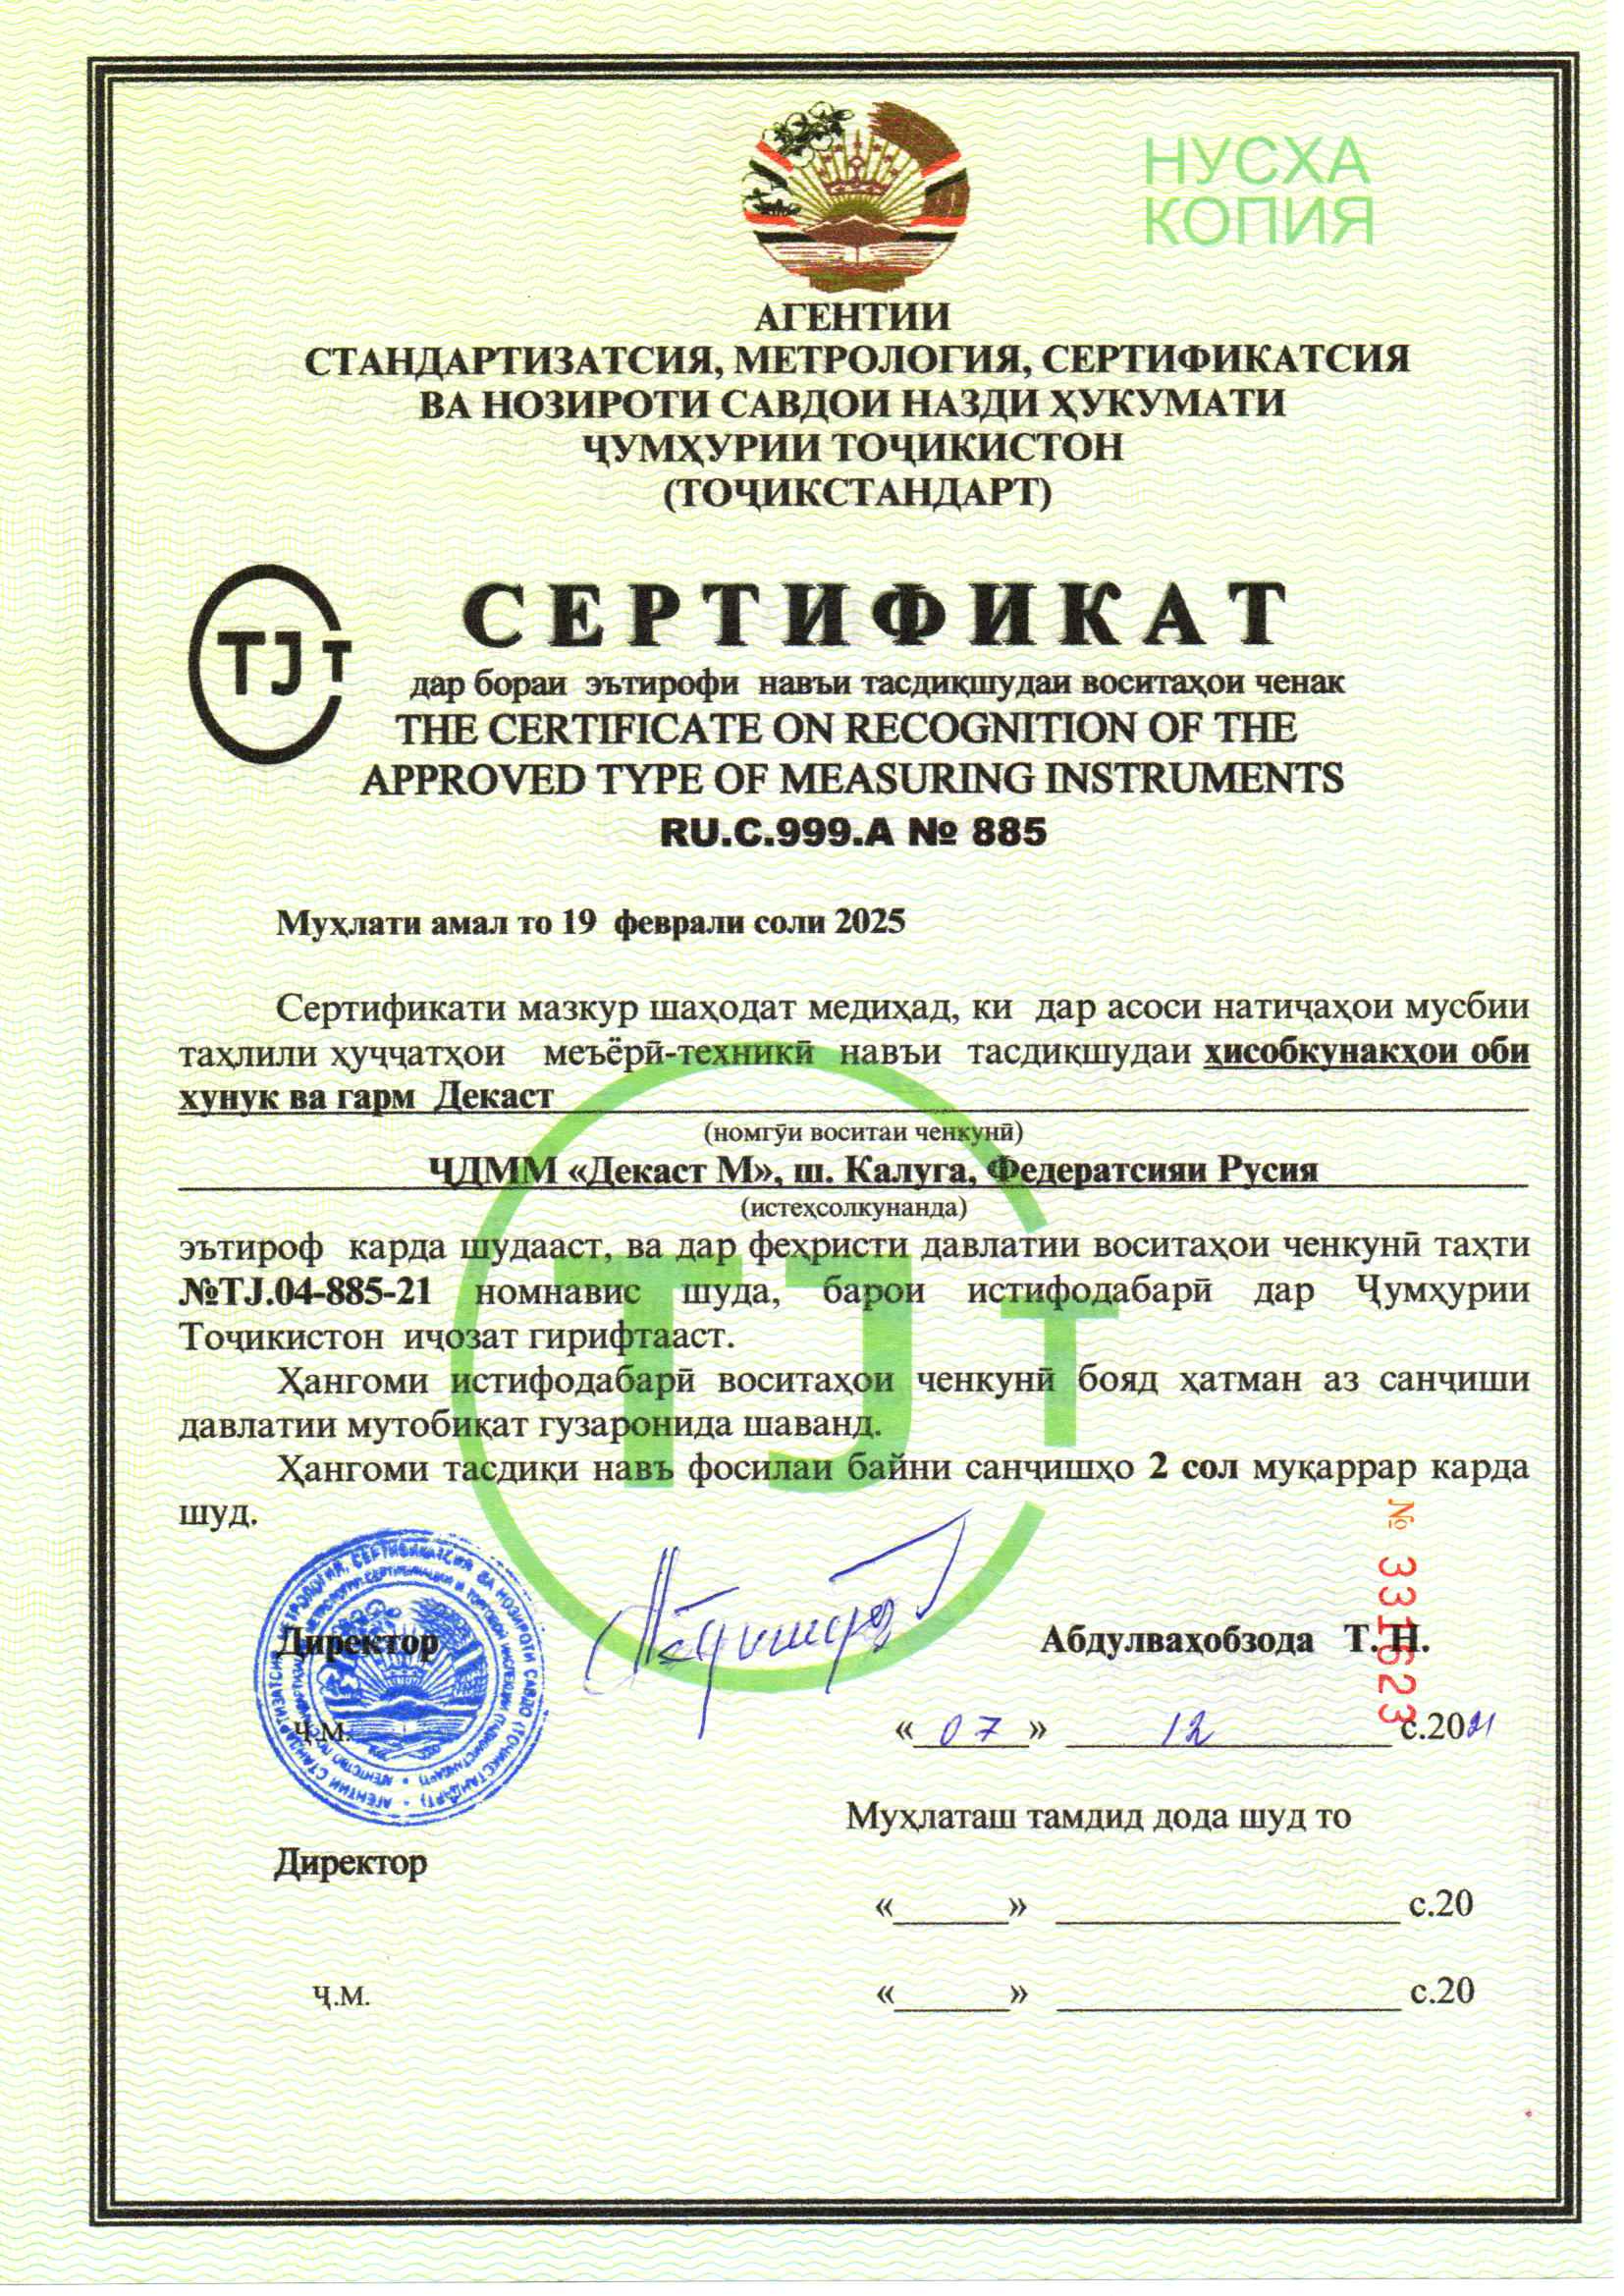 Сертификат о признании утверждения типа средств измерений Счетчики холодной и горячей воды Декаст, Таджикистан., до 19.02.2025 (tjk)